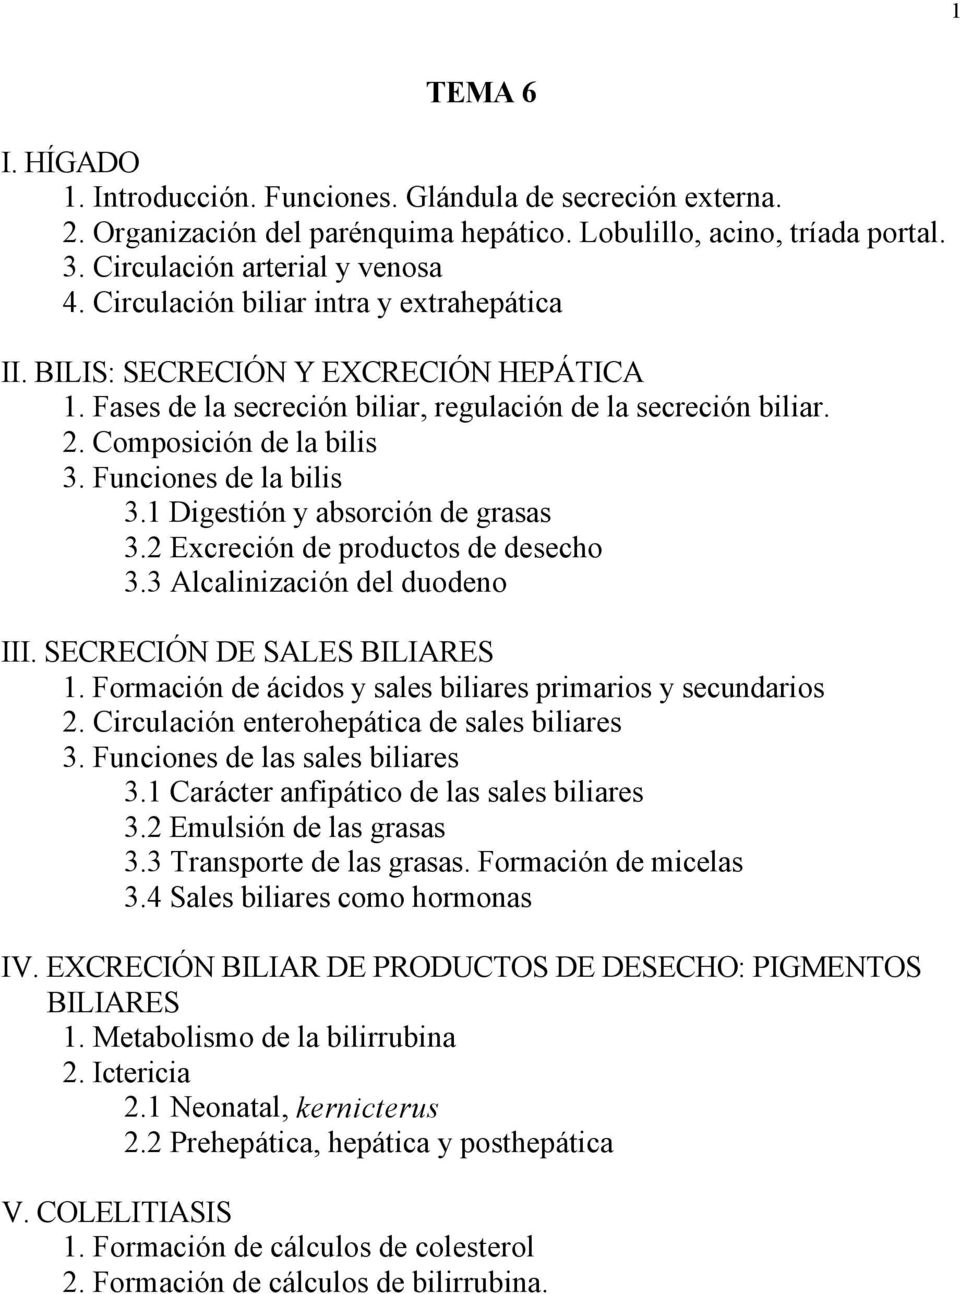 Funciones de la bilis 3.1 Digestión y absorción de grasas 3.2 Excreción de productos de desecho 3.3 Alcalinización del duodeno III. SECRECIÓN DE SALES BILIARES 1.